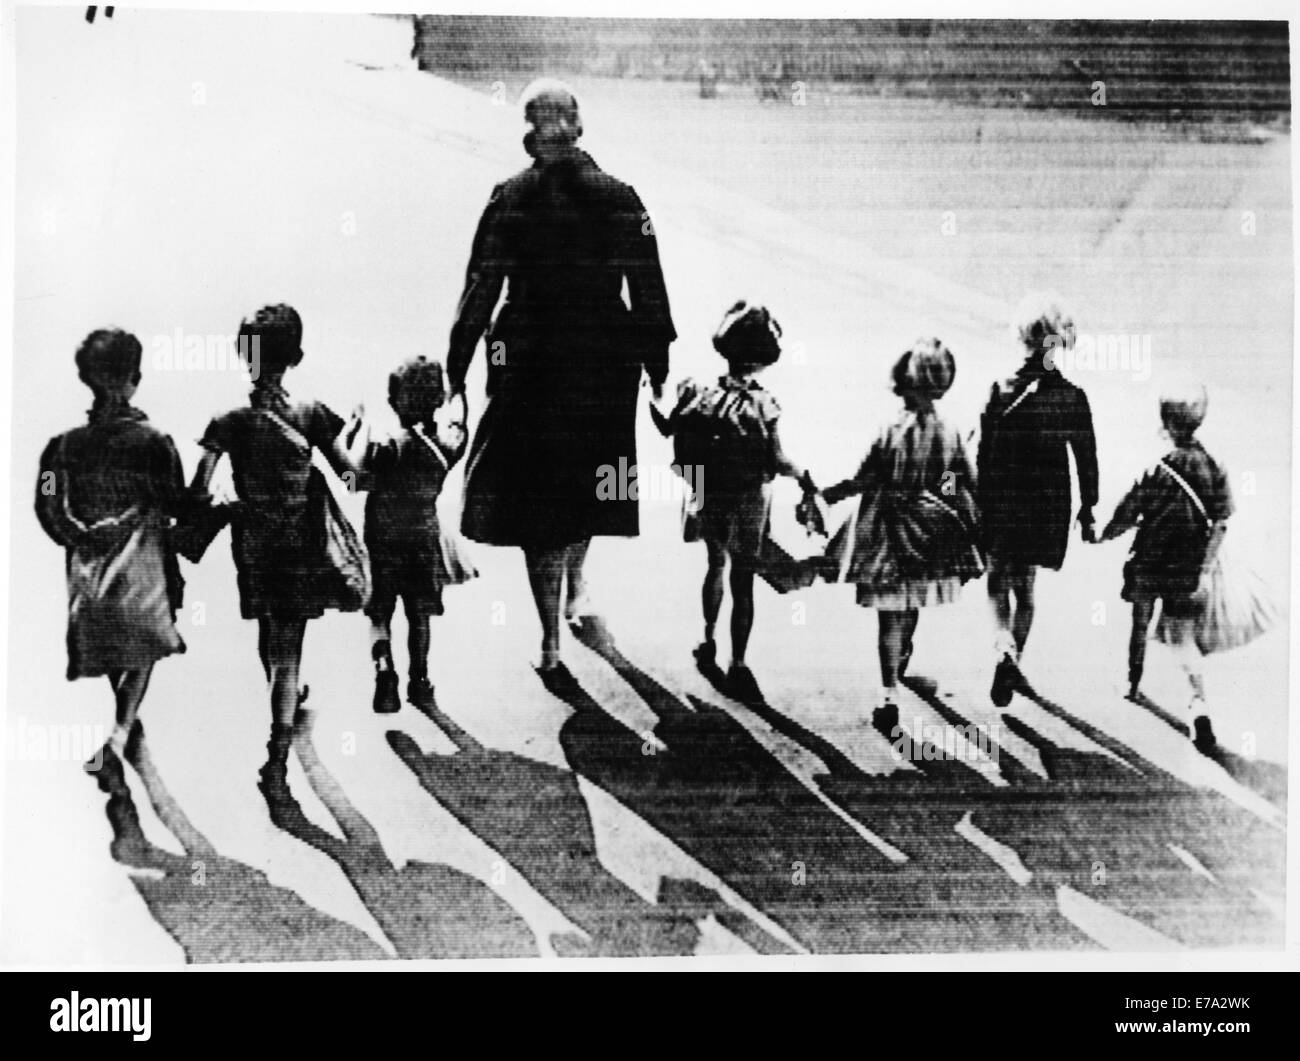 Gruppe von Kindern mit Notfall-Packs auf ihren Rücken wird mobilisiert für mögliche Evakuierung wegen anstehenden Krieg Krise, London, England, August 1939 Stockfoto